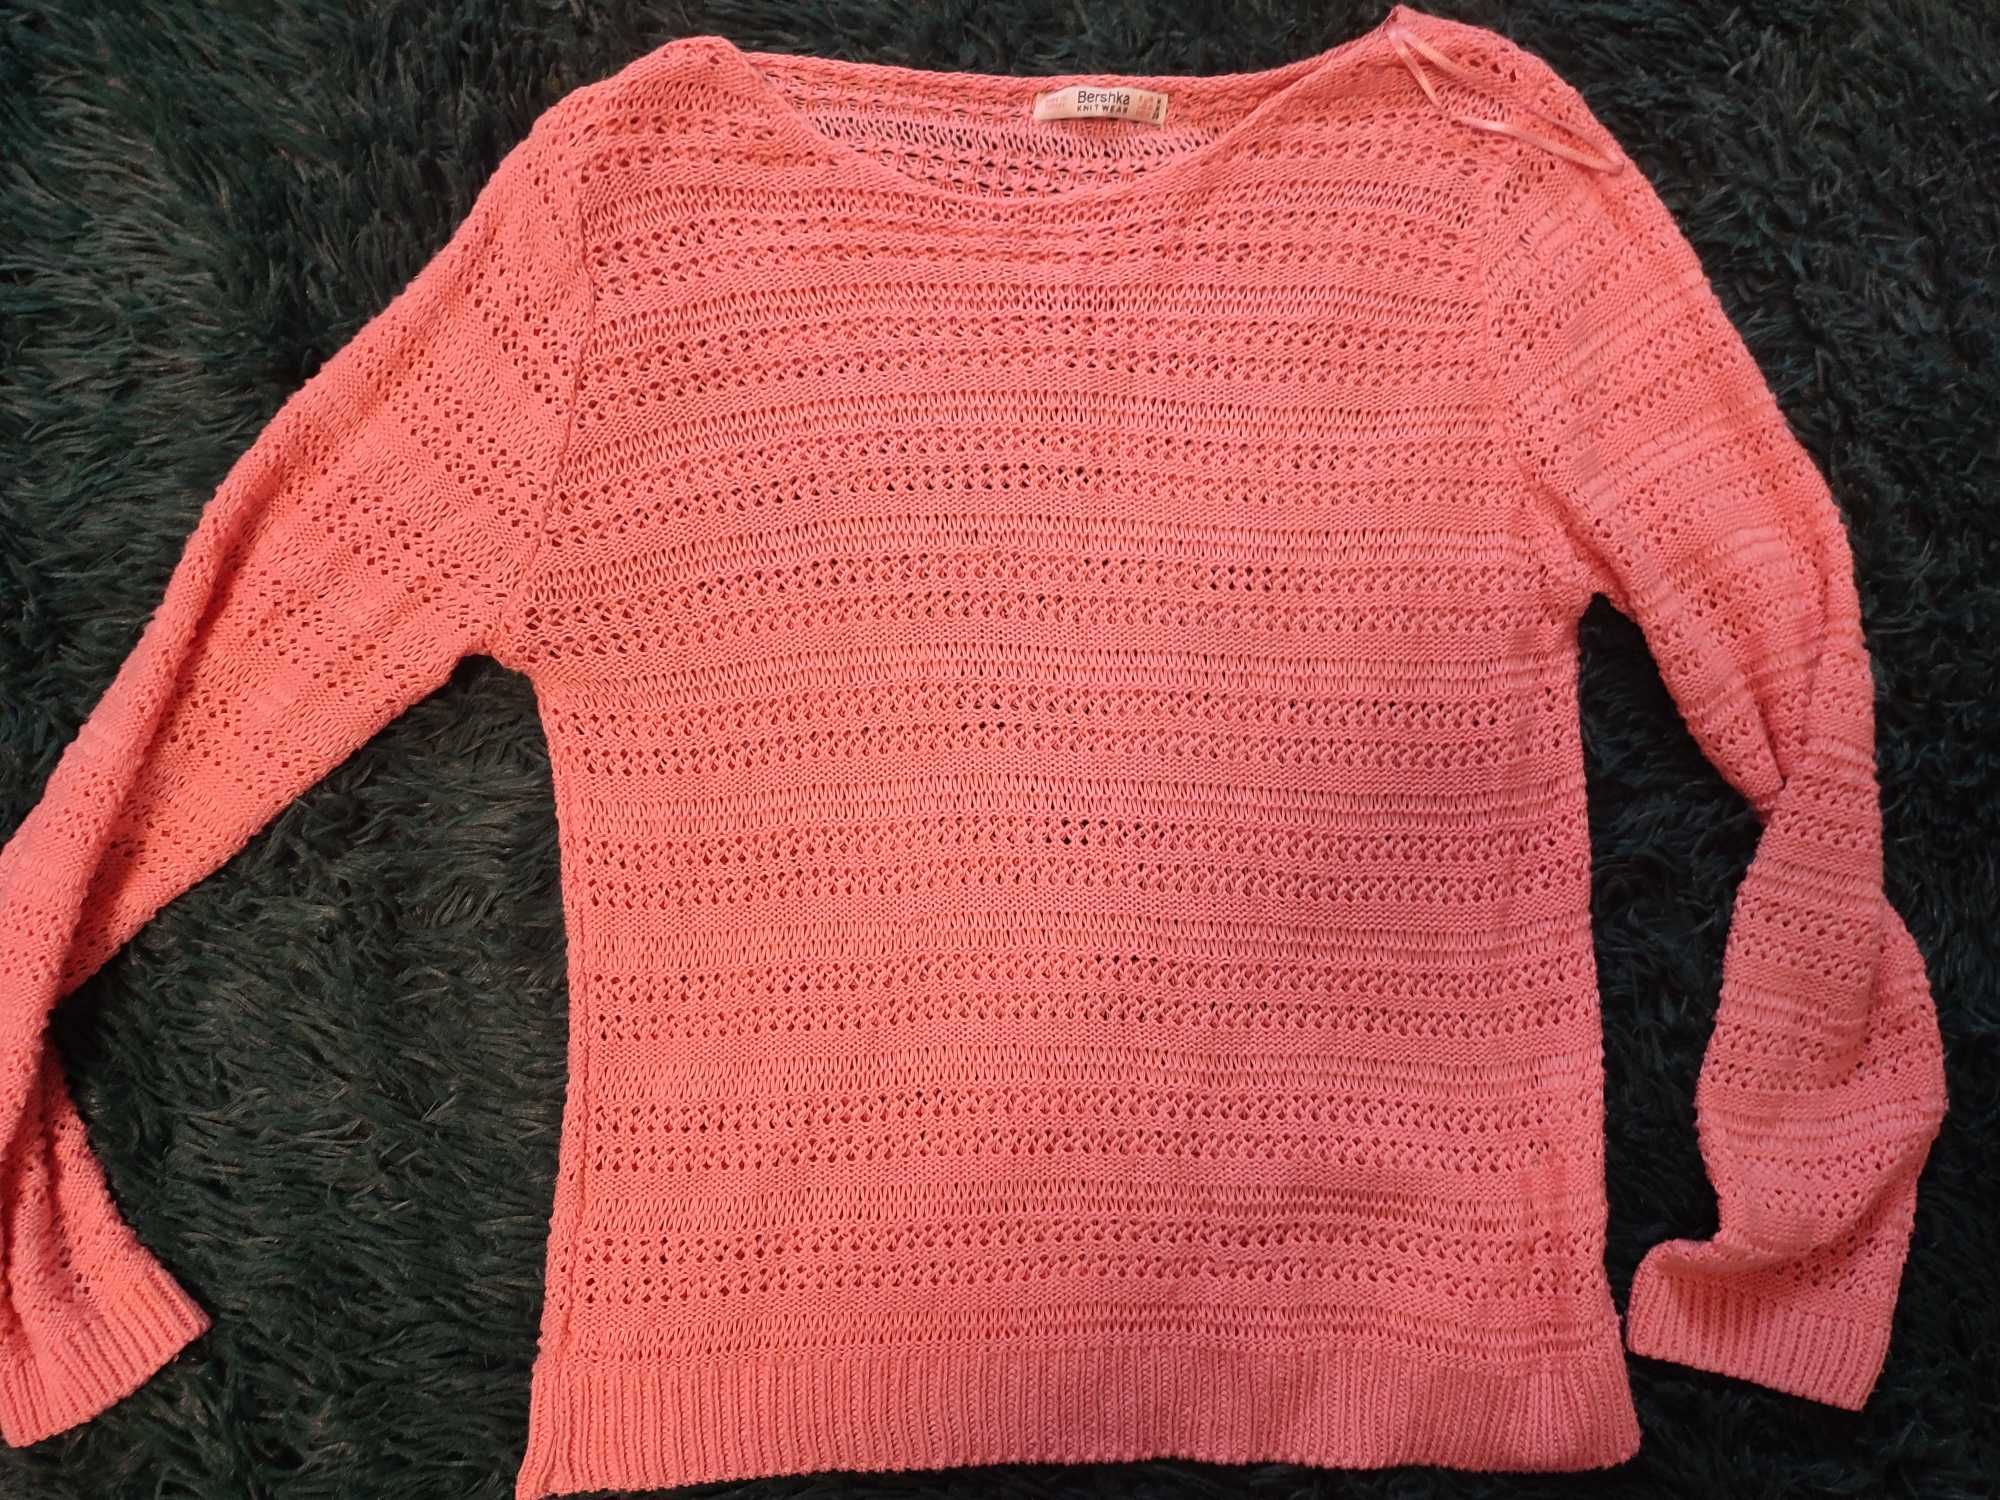 Sweterek różowy bershka